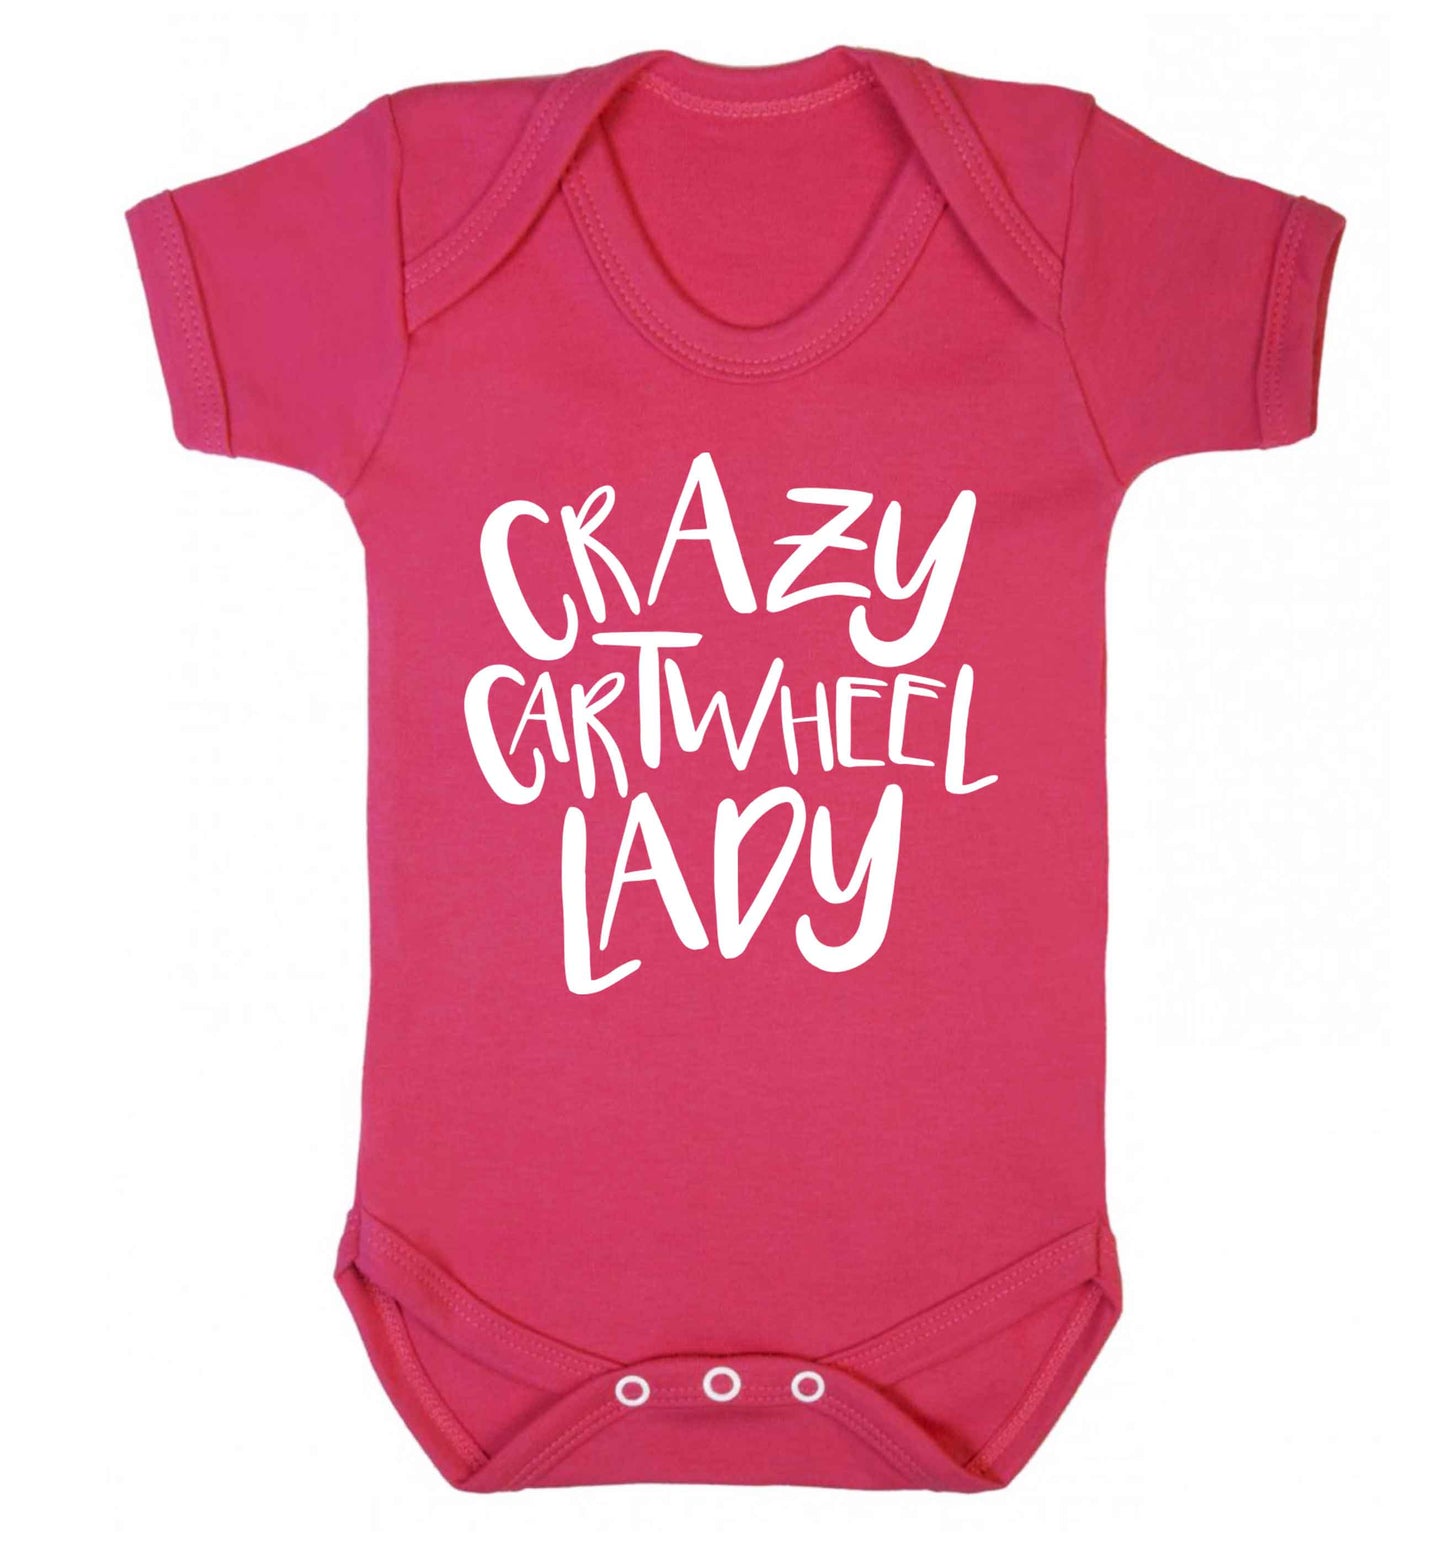 Crazy cartwheel lady Baby Vest dark pink 18-24 months